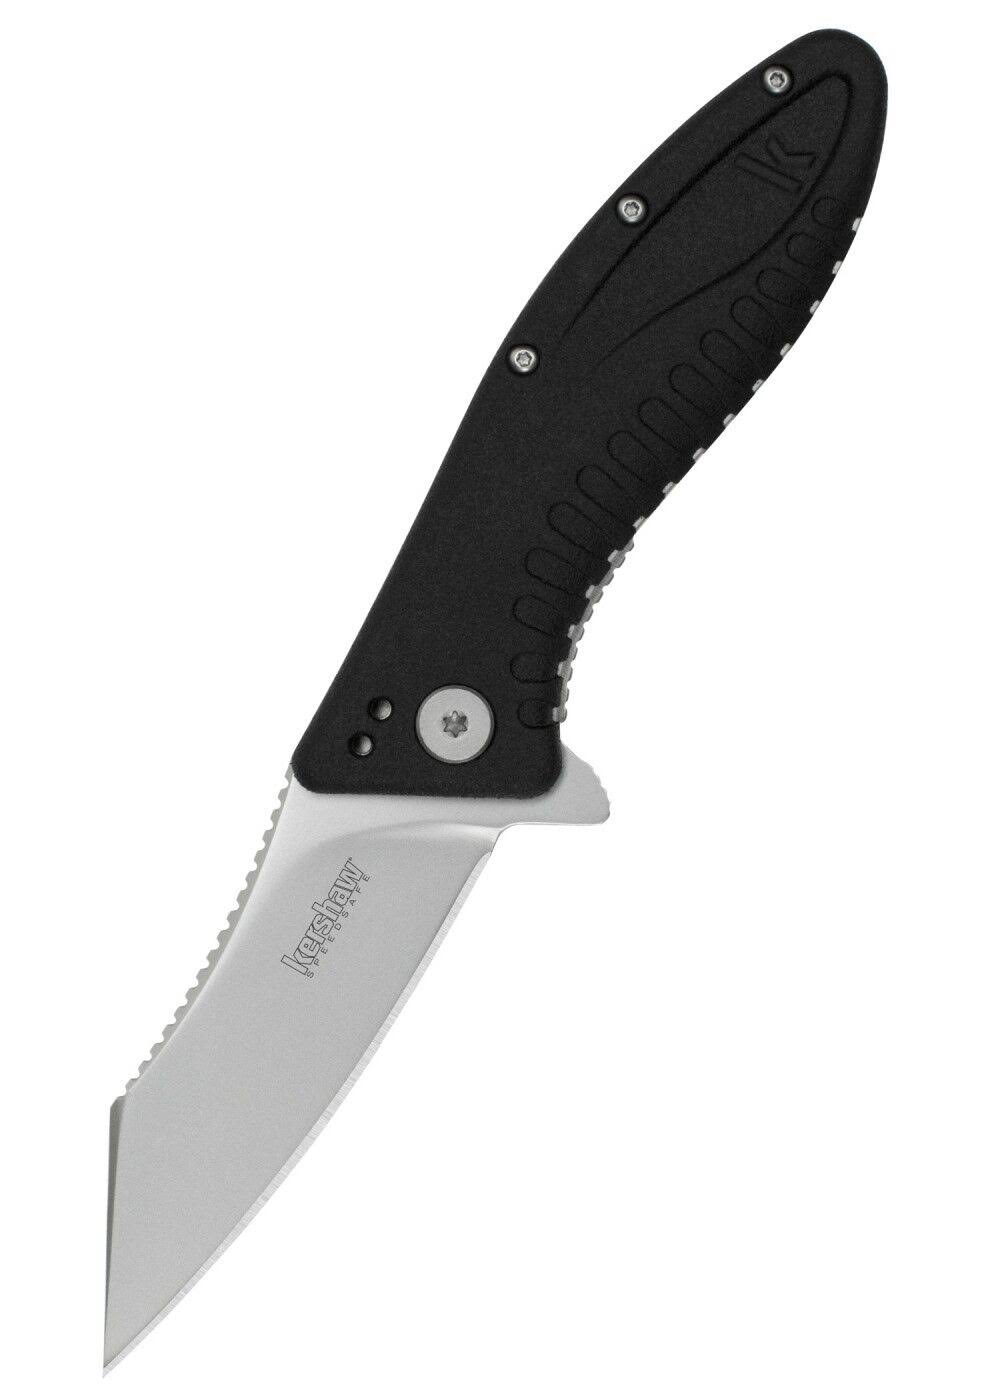 Kershaw 1319 Grinder Assisted Hunting Flipper Folding Knife - Black, 3.25"